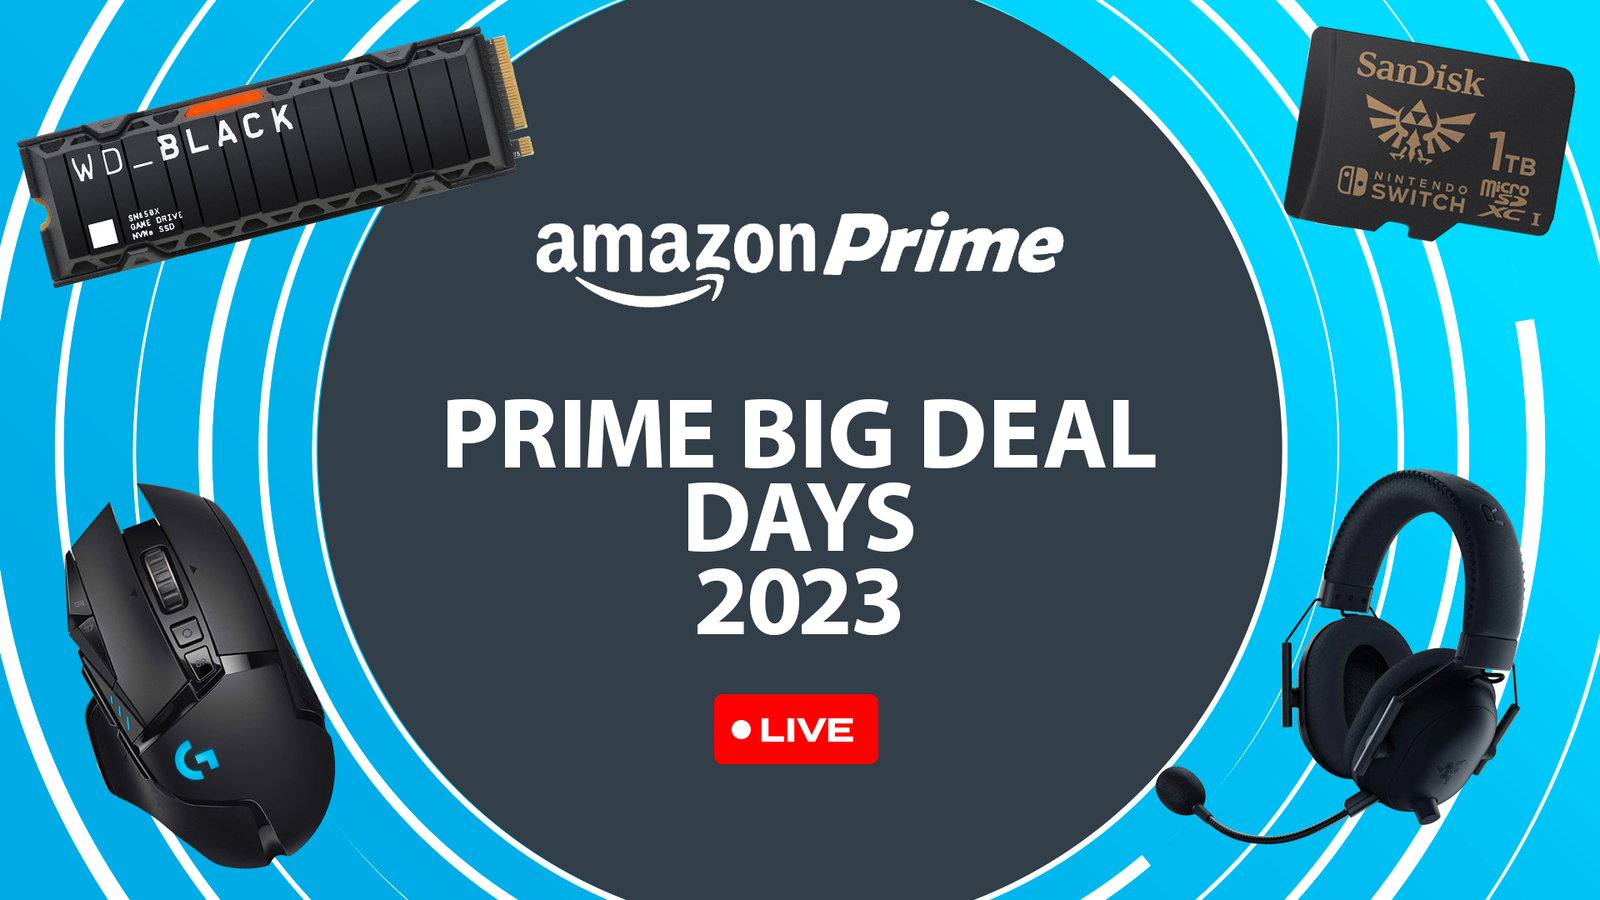 Prime Big Deal Days 2023